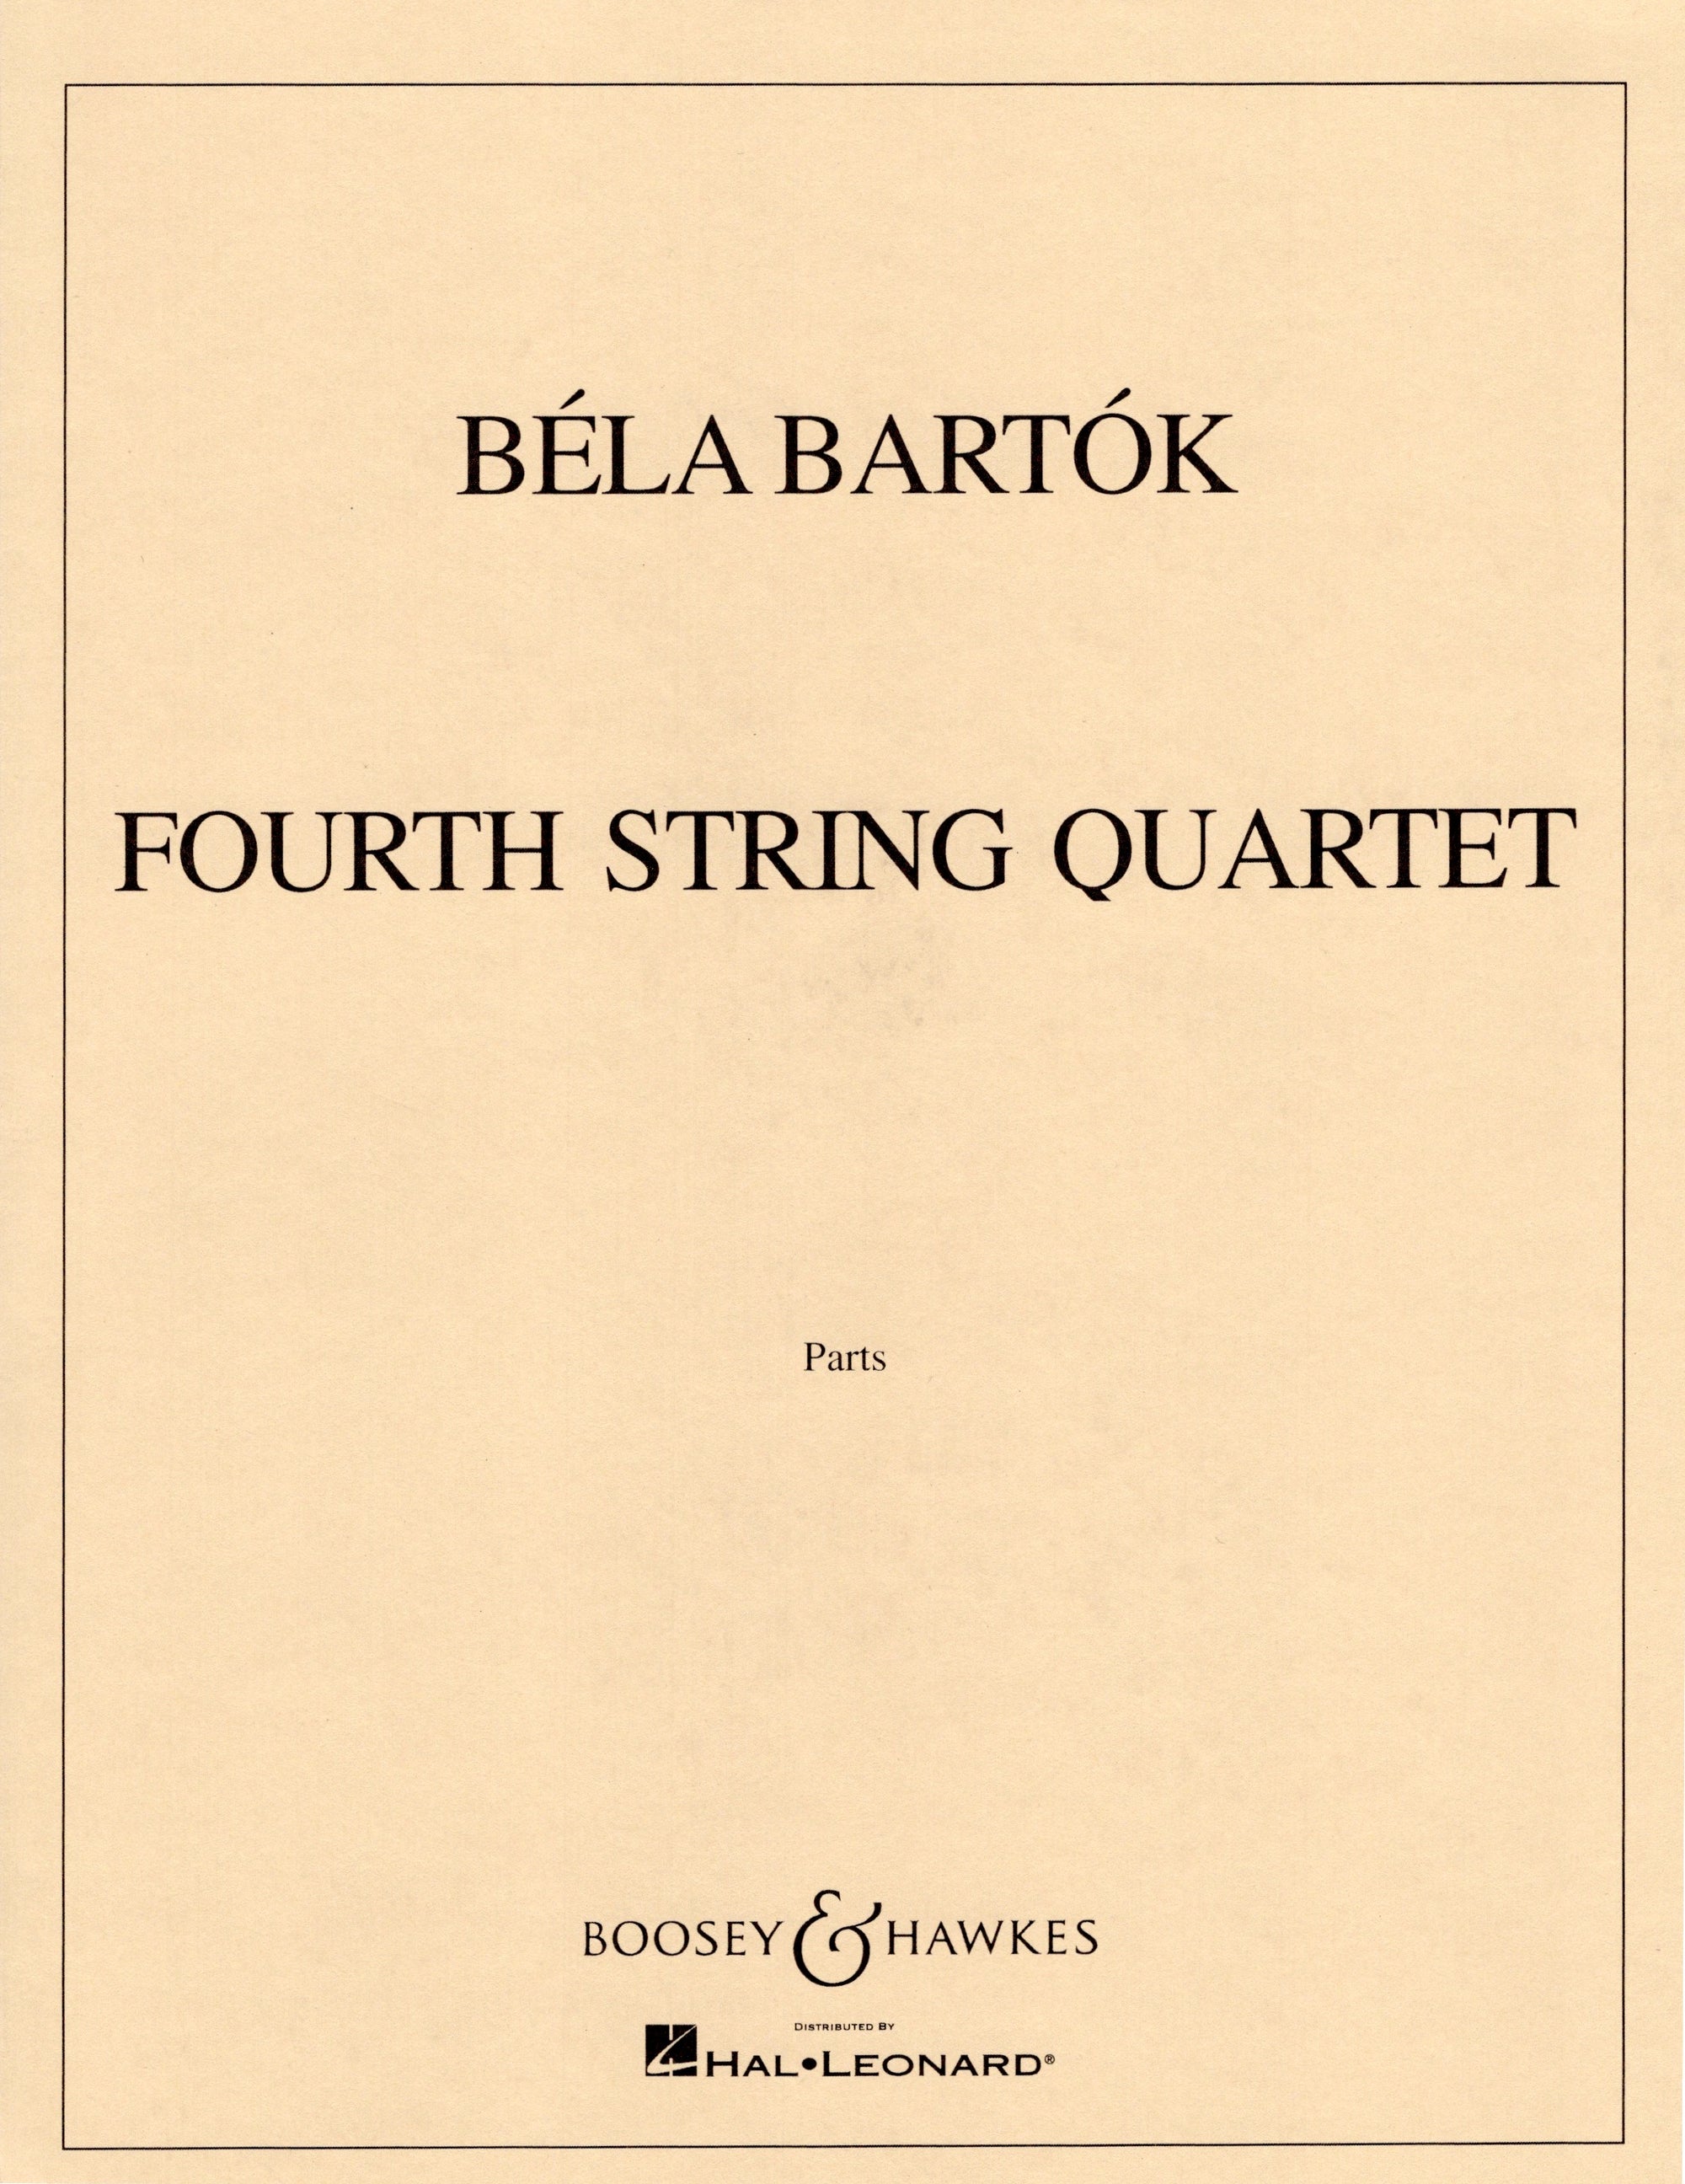 Bartók: String Quartet No. 4